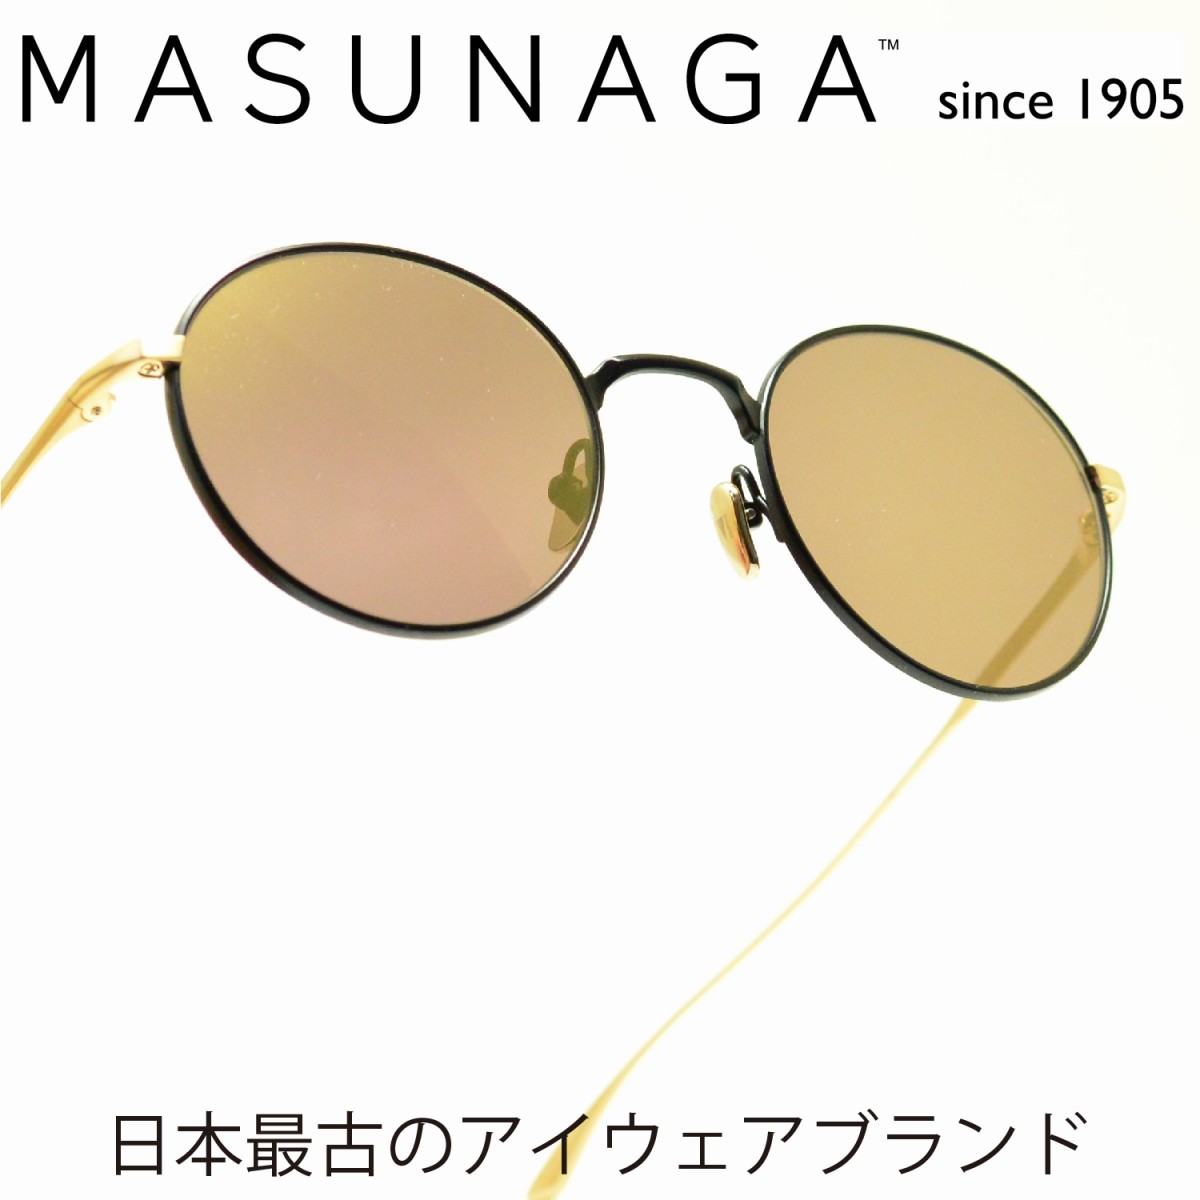 増永眼鏡 メガネ メンズ MASUNAGA　Since1905 WRIGHT COL-S39メガネ 眼鏡 めがね メンズ レディース おしゃれ ブランド 人気 おすすめ フレーム 流行り 度付き　レンズ